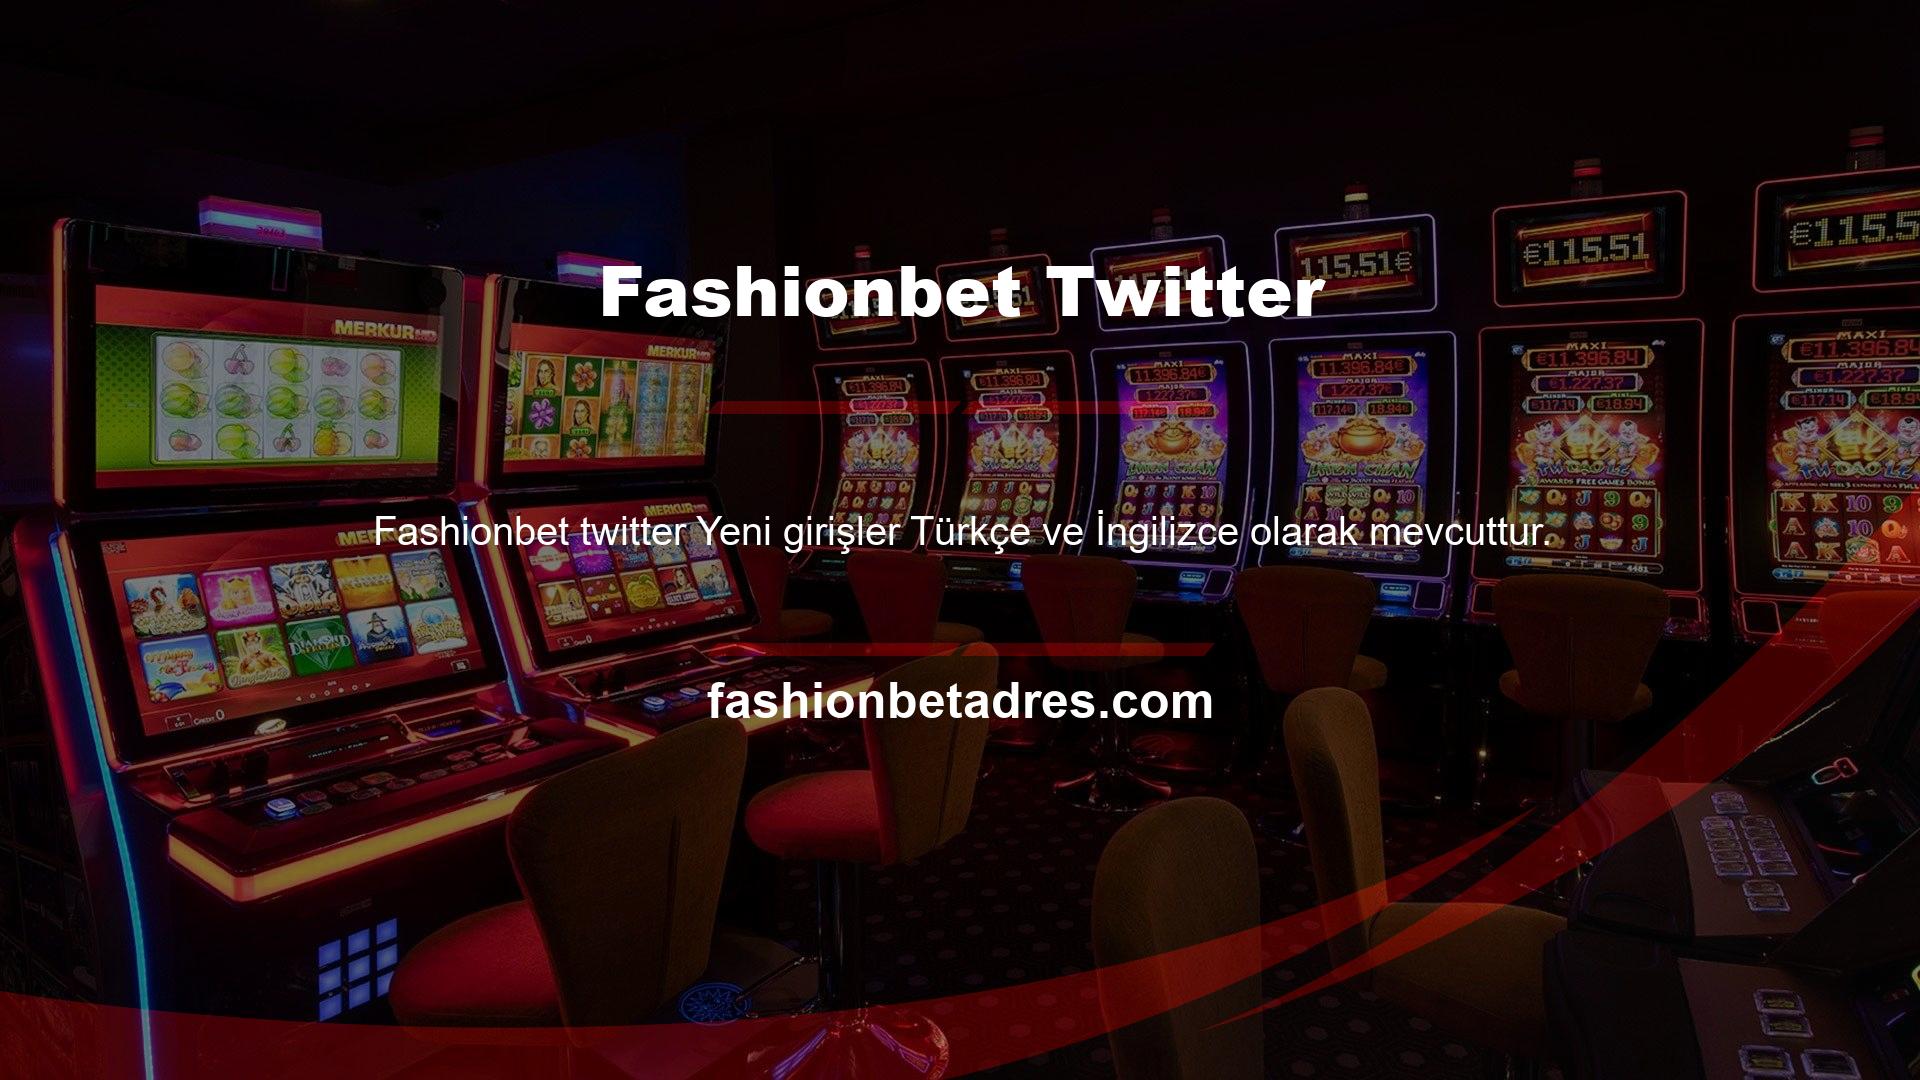 Fashionbet Twitter alan adı adresi, yeni bağlantılara uyum sağlamak için sürekli değişiyor